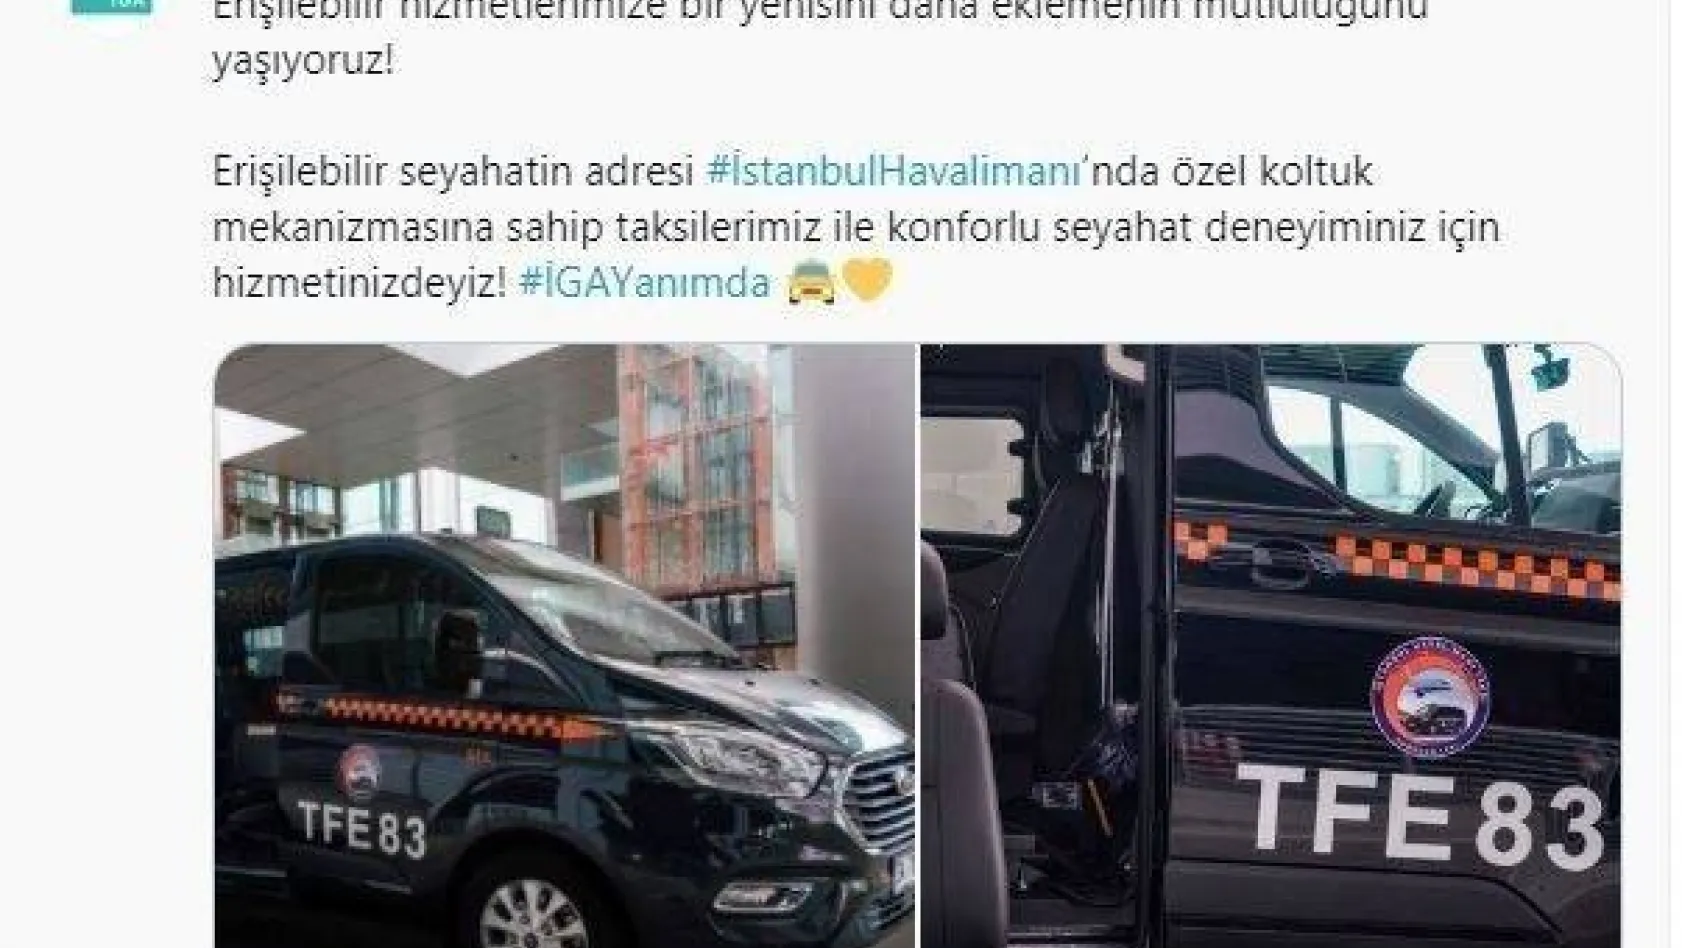 İstanbul Havalimanı'nda engelli yolculara özel taksi uygulaması